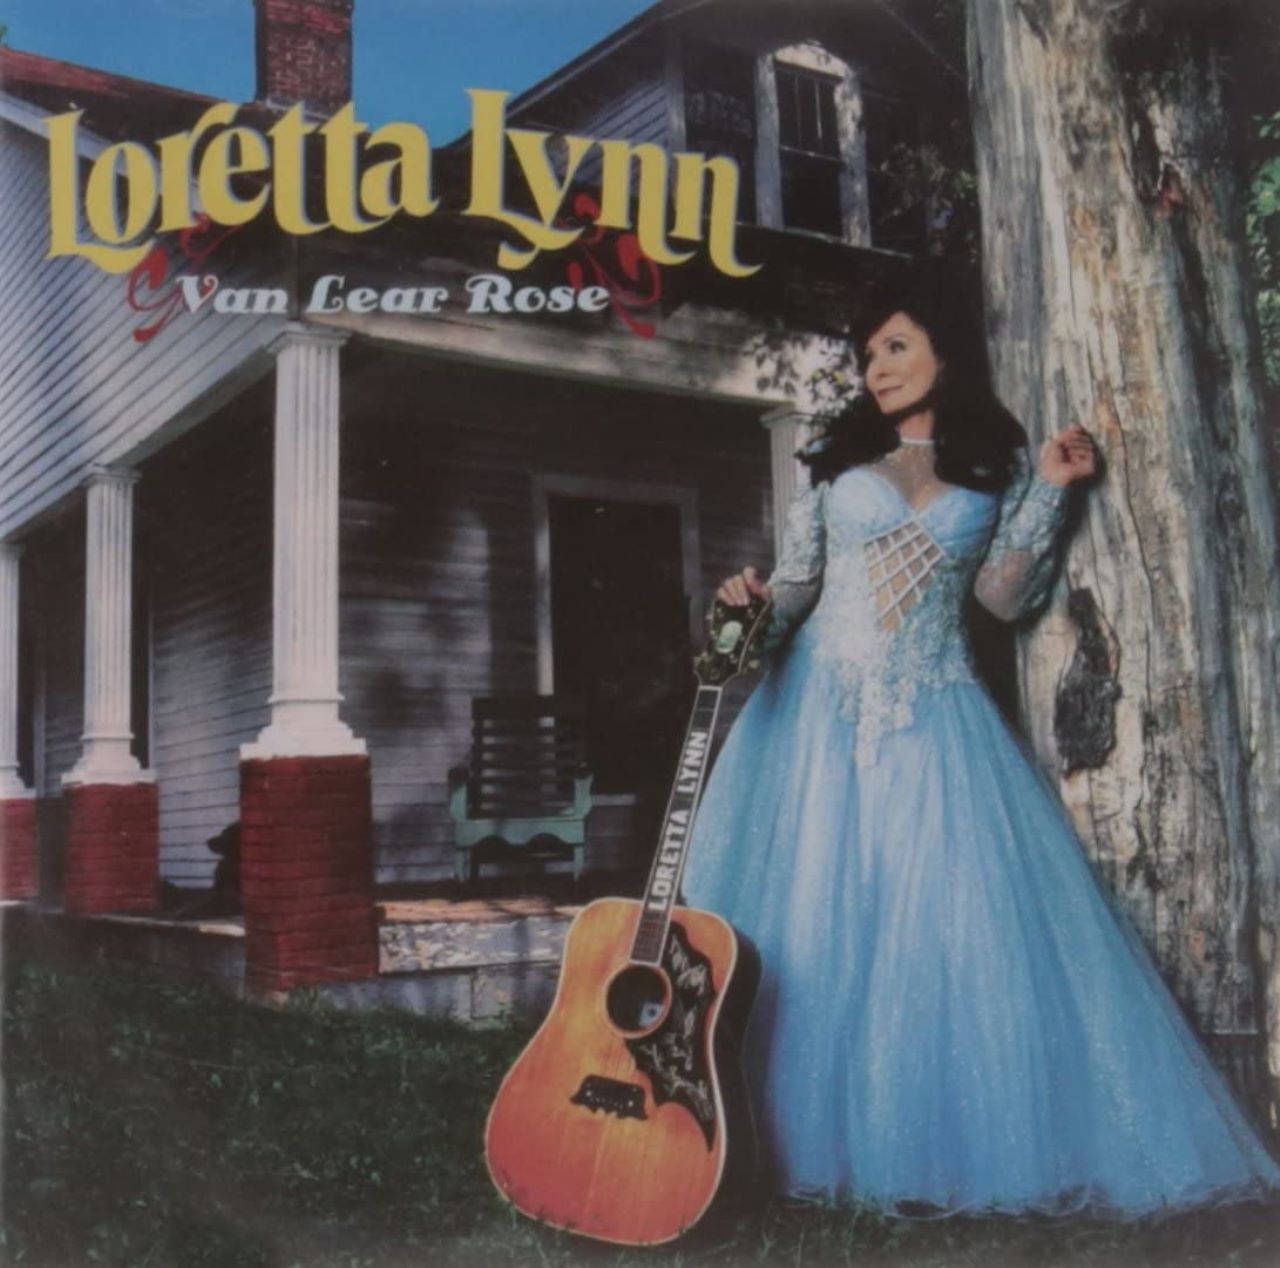 Loretta Lynn – Van Lear Rose cover album